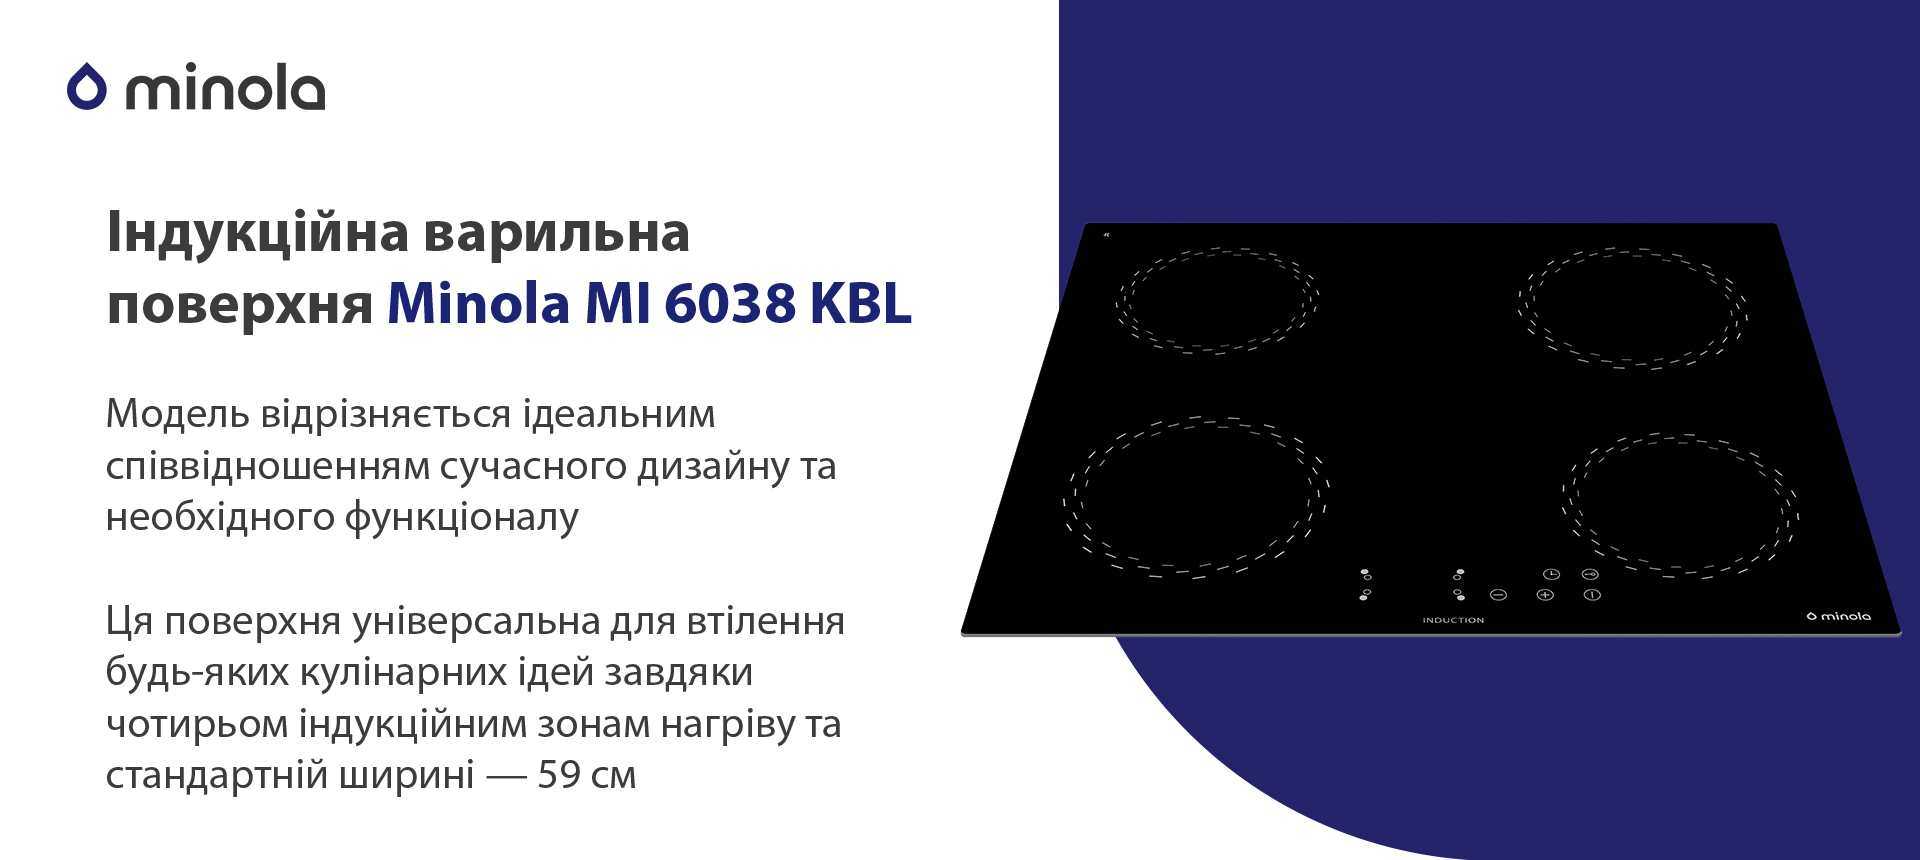 Індукційна варильна поверхня Minola MI 6038 KBL зовнішній вигляд - фото 9